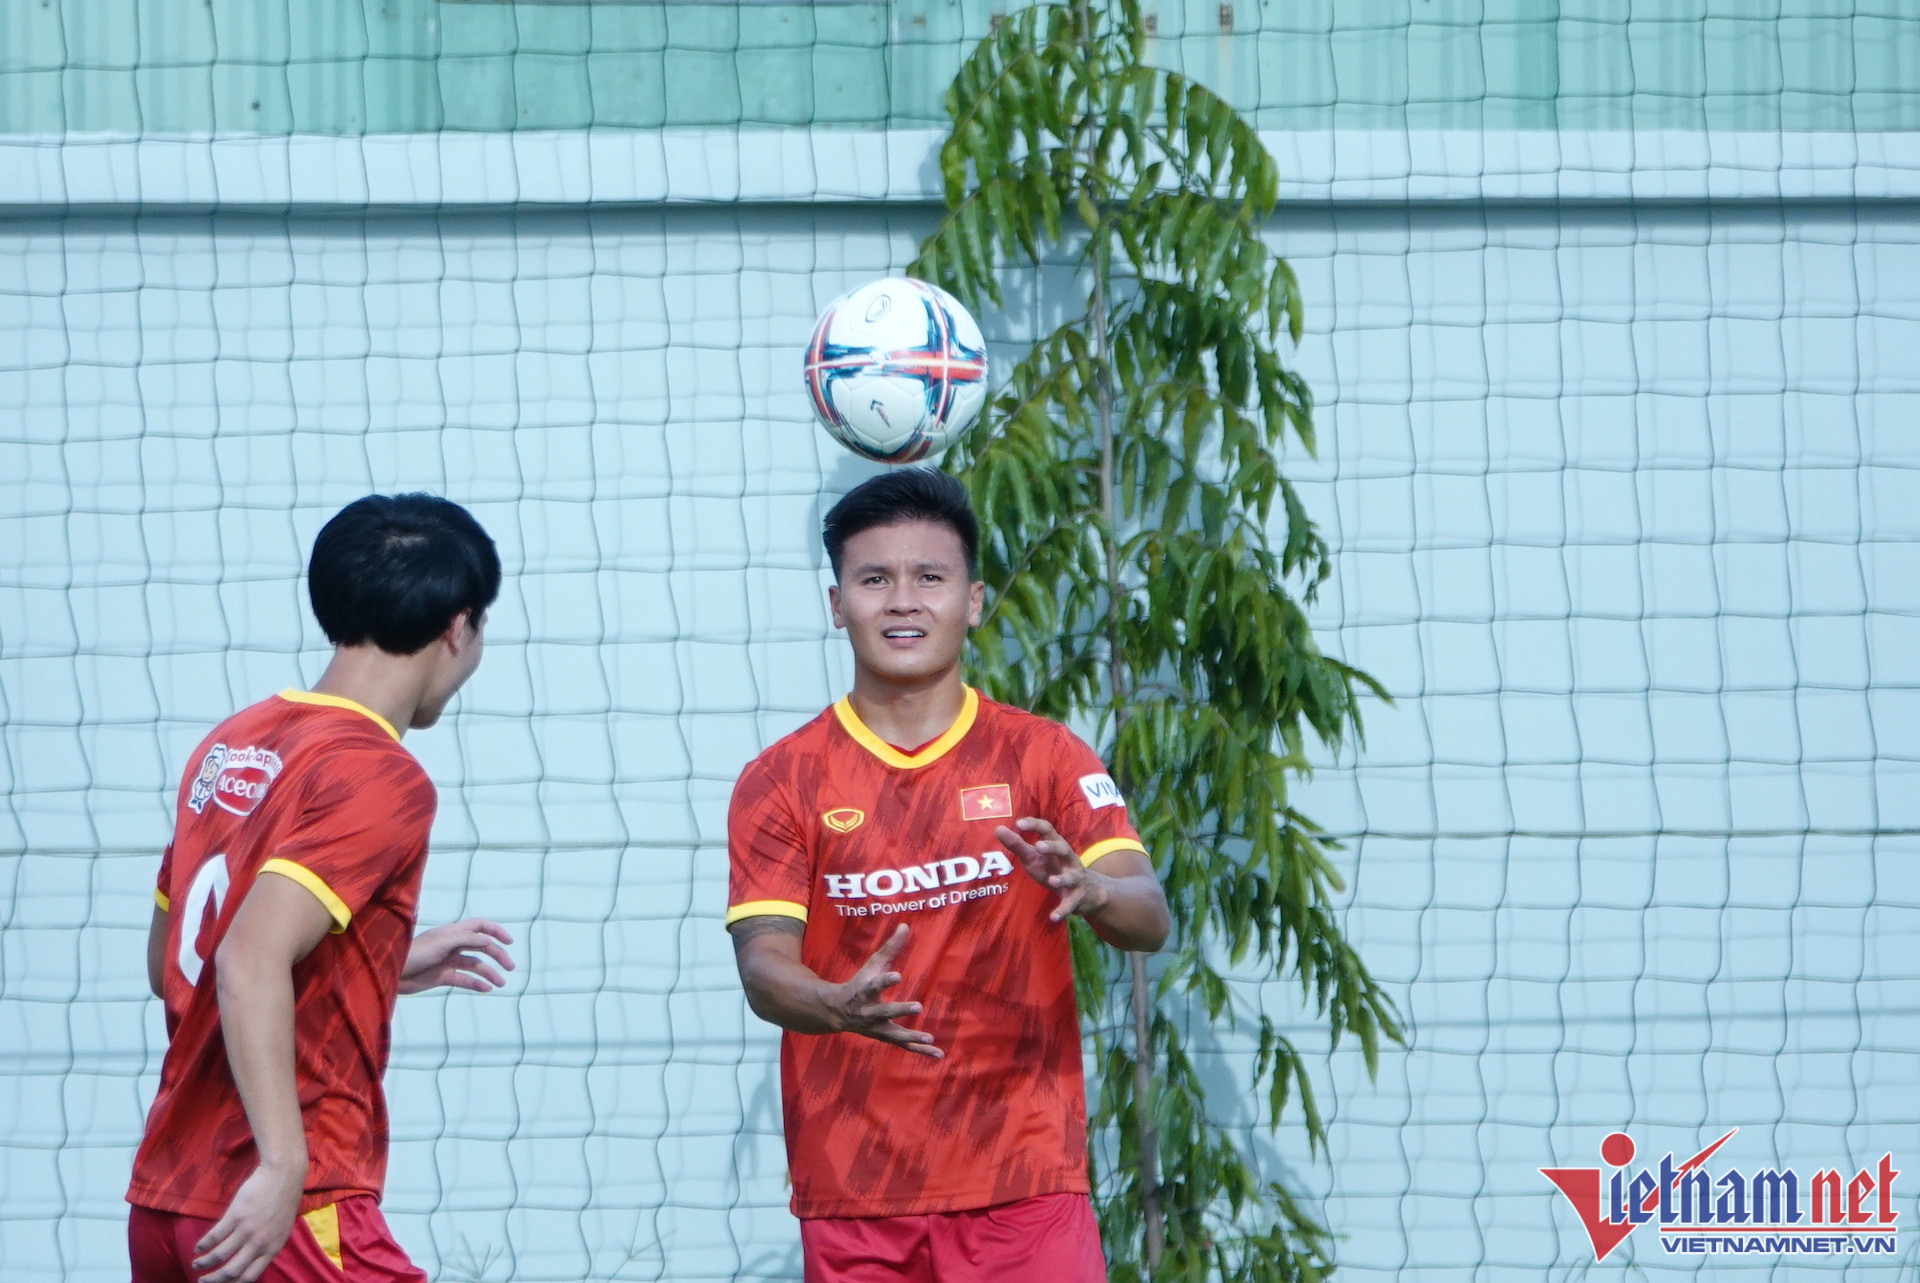 Dù vậy, tiền vệ của tuyển Việt Nam vẫn tỏ ra chuyên nghiệp trong việc chuẩn bị cho các trận đấu giao hữu sắp tới với tuyển Singapore (21/9) và Ấn Độ (27/9).